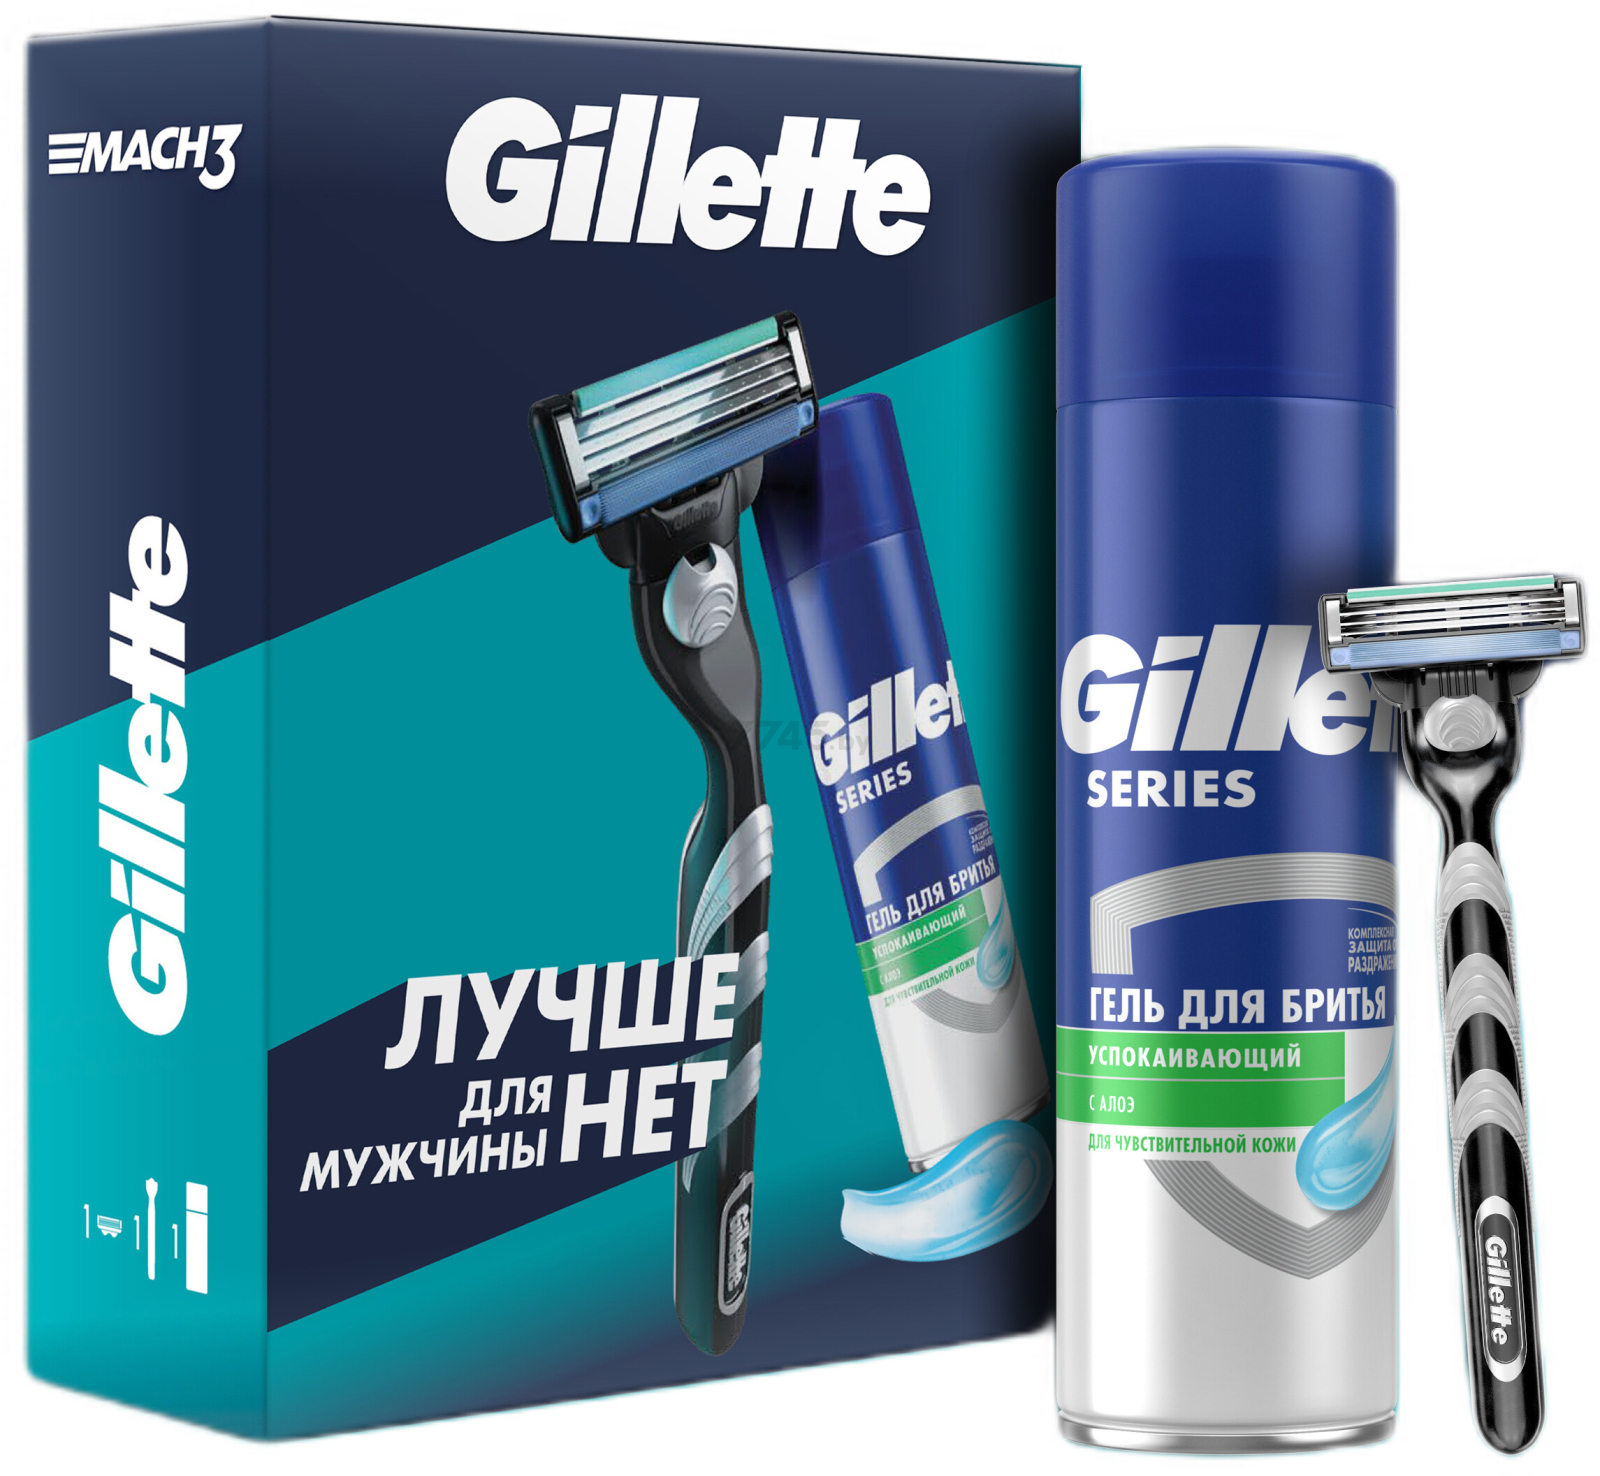 Набор подарочный GILLETTE Mach3 Станок и Гель для бритья для чувствительной кожи алоэ 200 мл